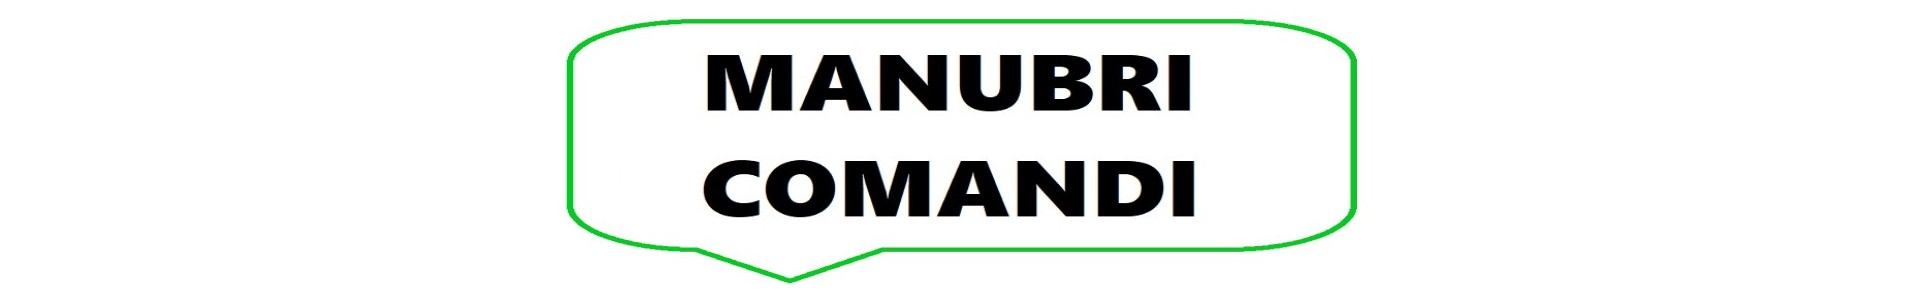 Manubri / Comandi